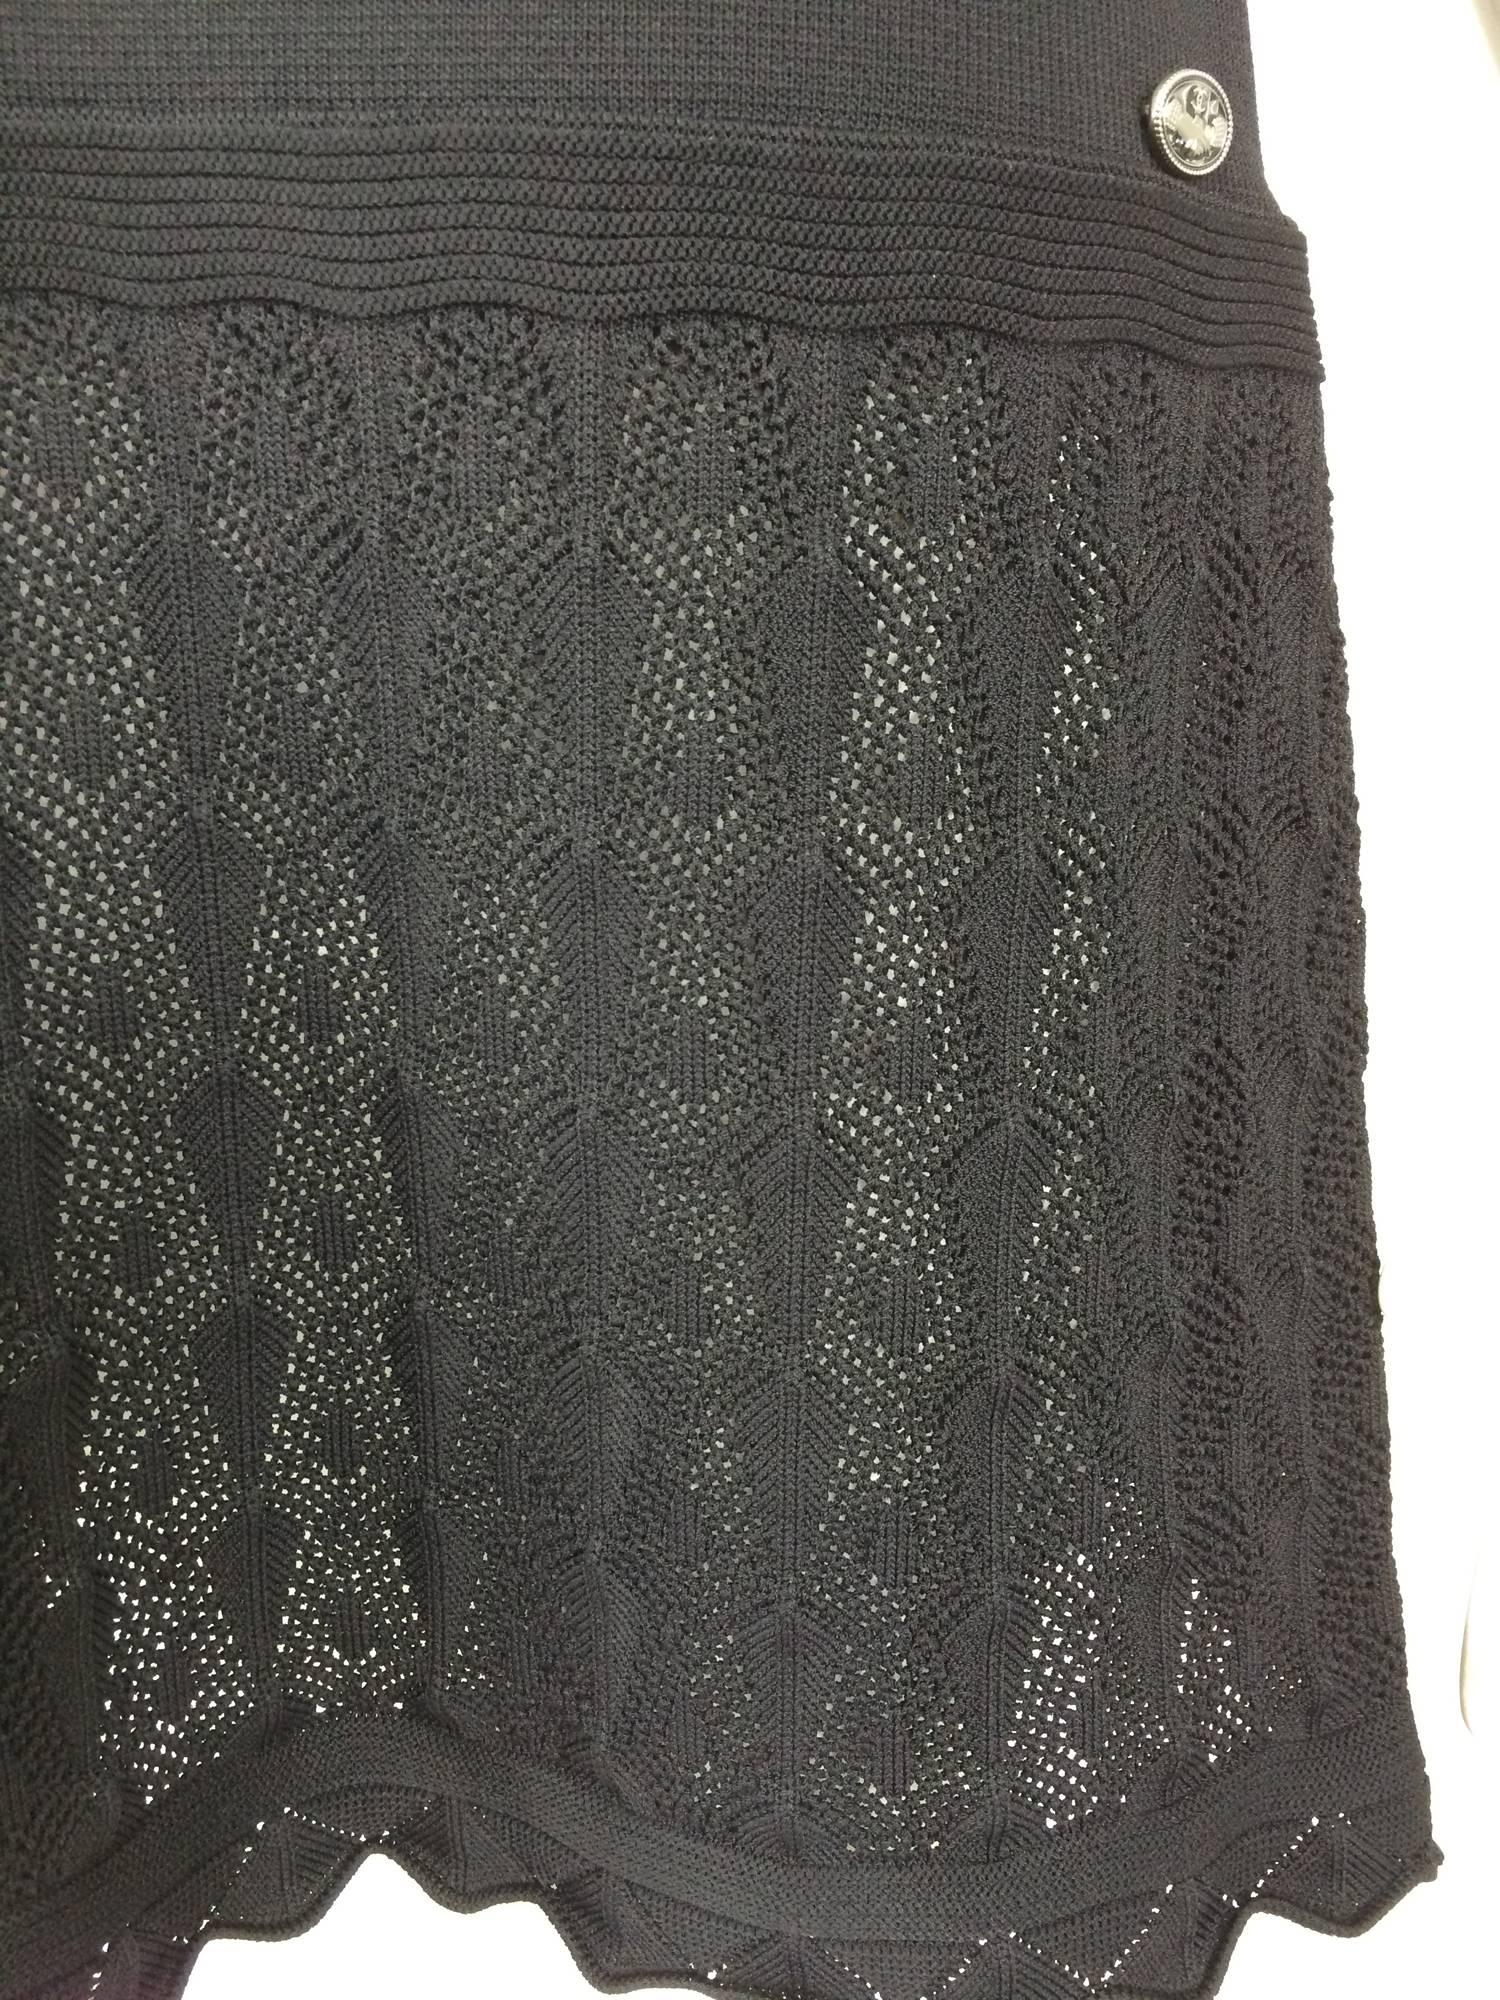 Chanel shoulder baring little black knit dress 2008 unworn 5